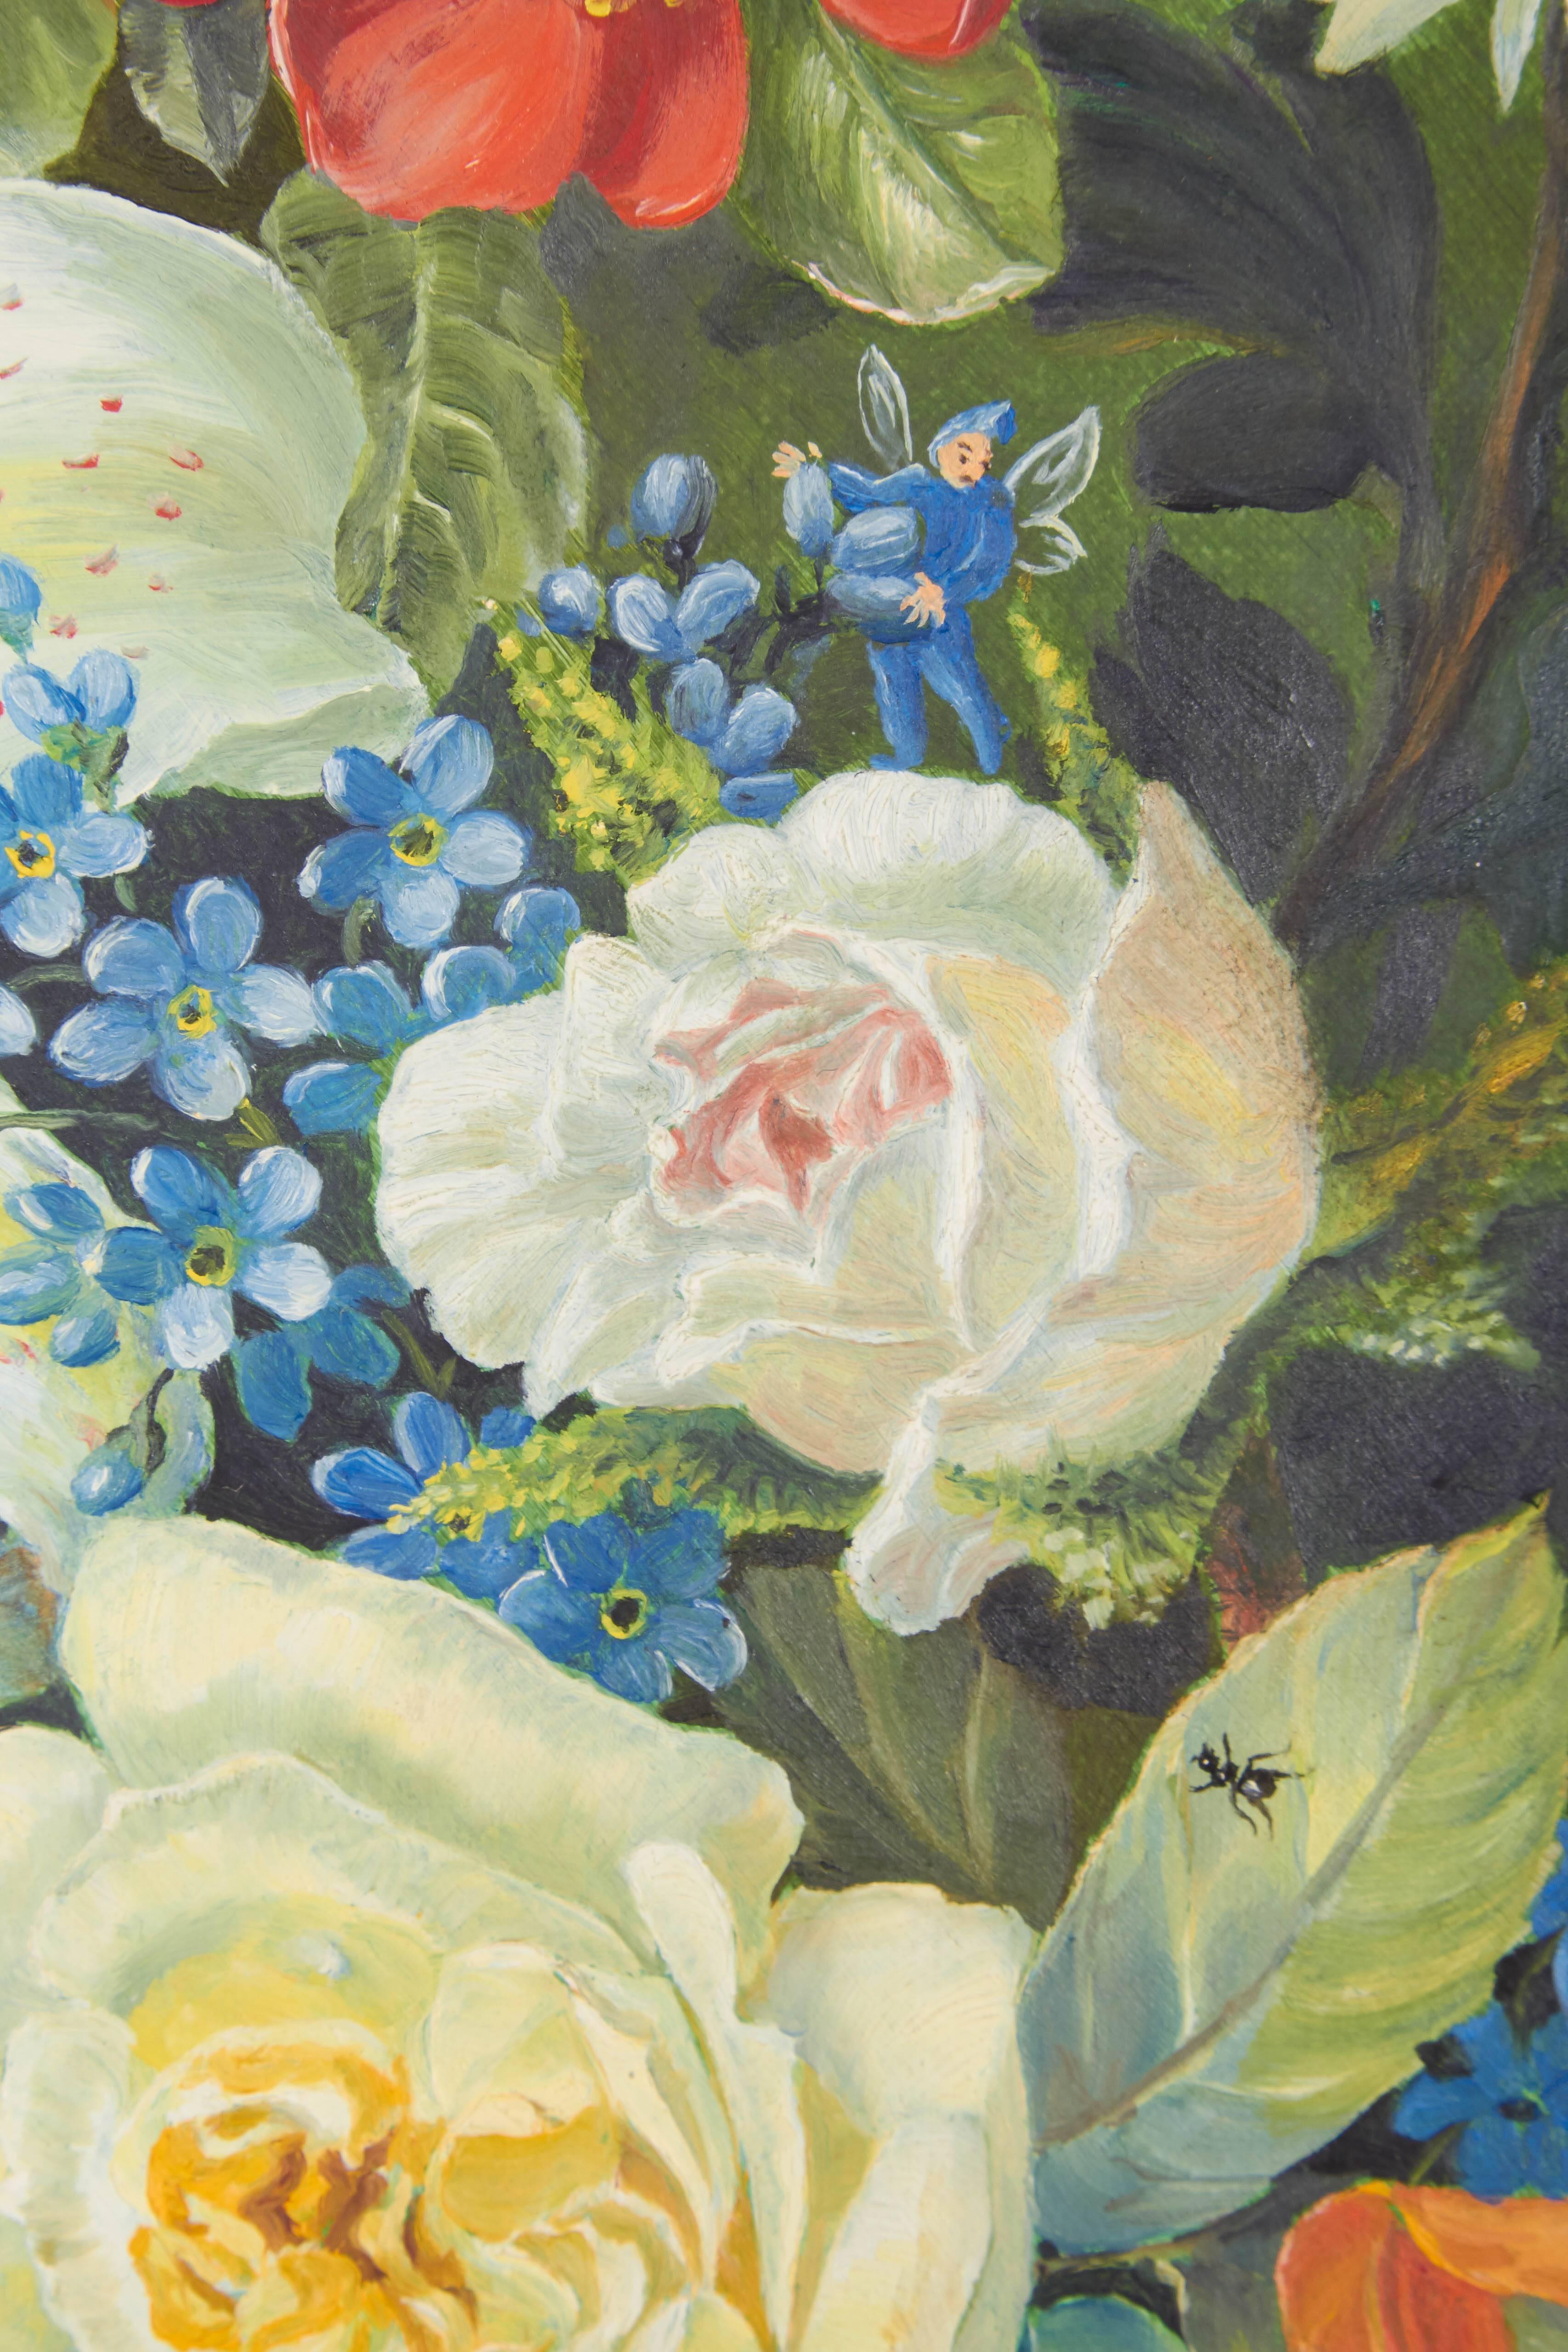 Canvas Floral Still Life Painting by Ethelwyn Shiel